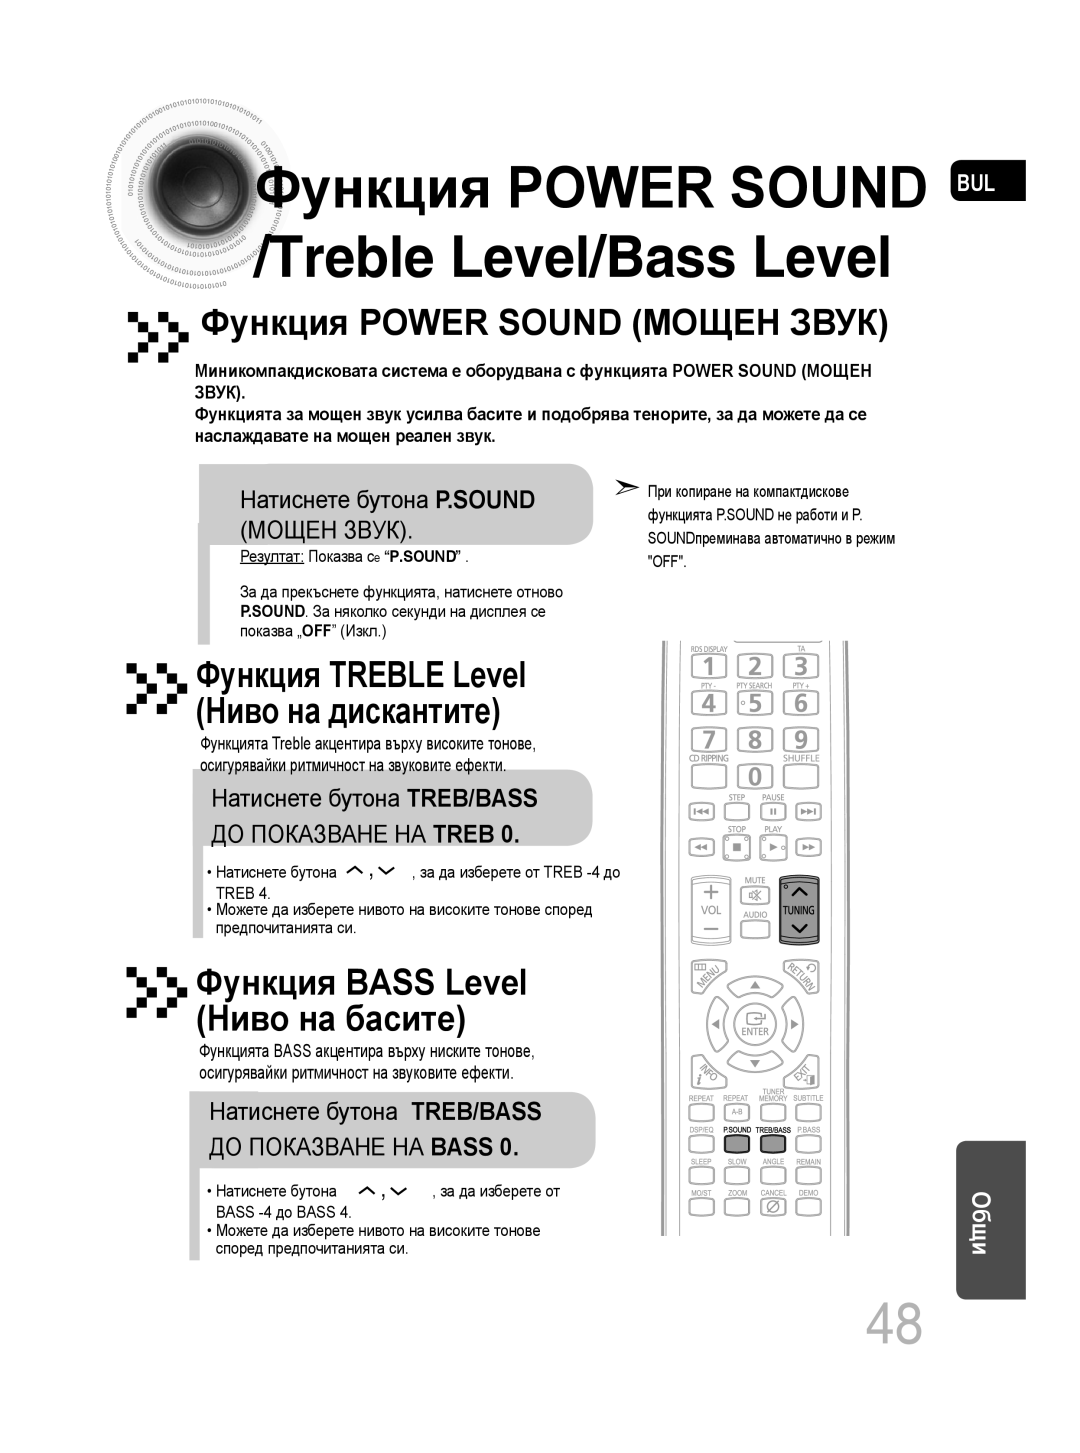 Samsung MM-C330D/EDC Функция POWER SOUND МОЩЕН ЗВУК, Функция TREBLE Level Ниво на дискантите, Treble Level/Bass Level 